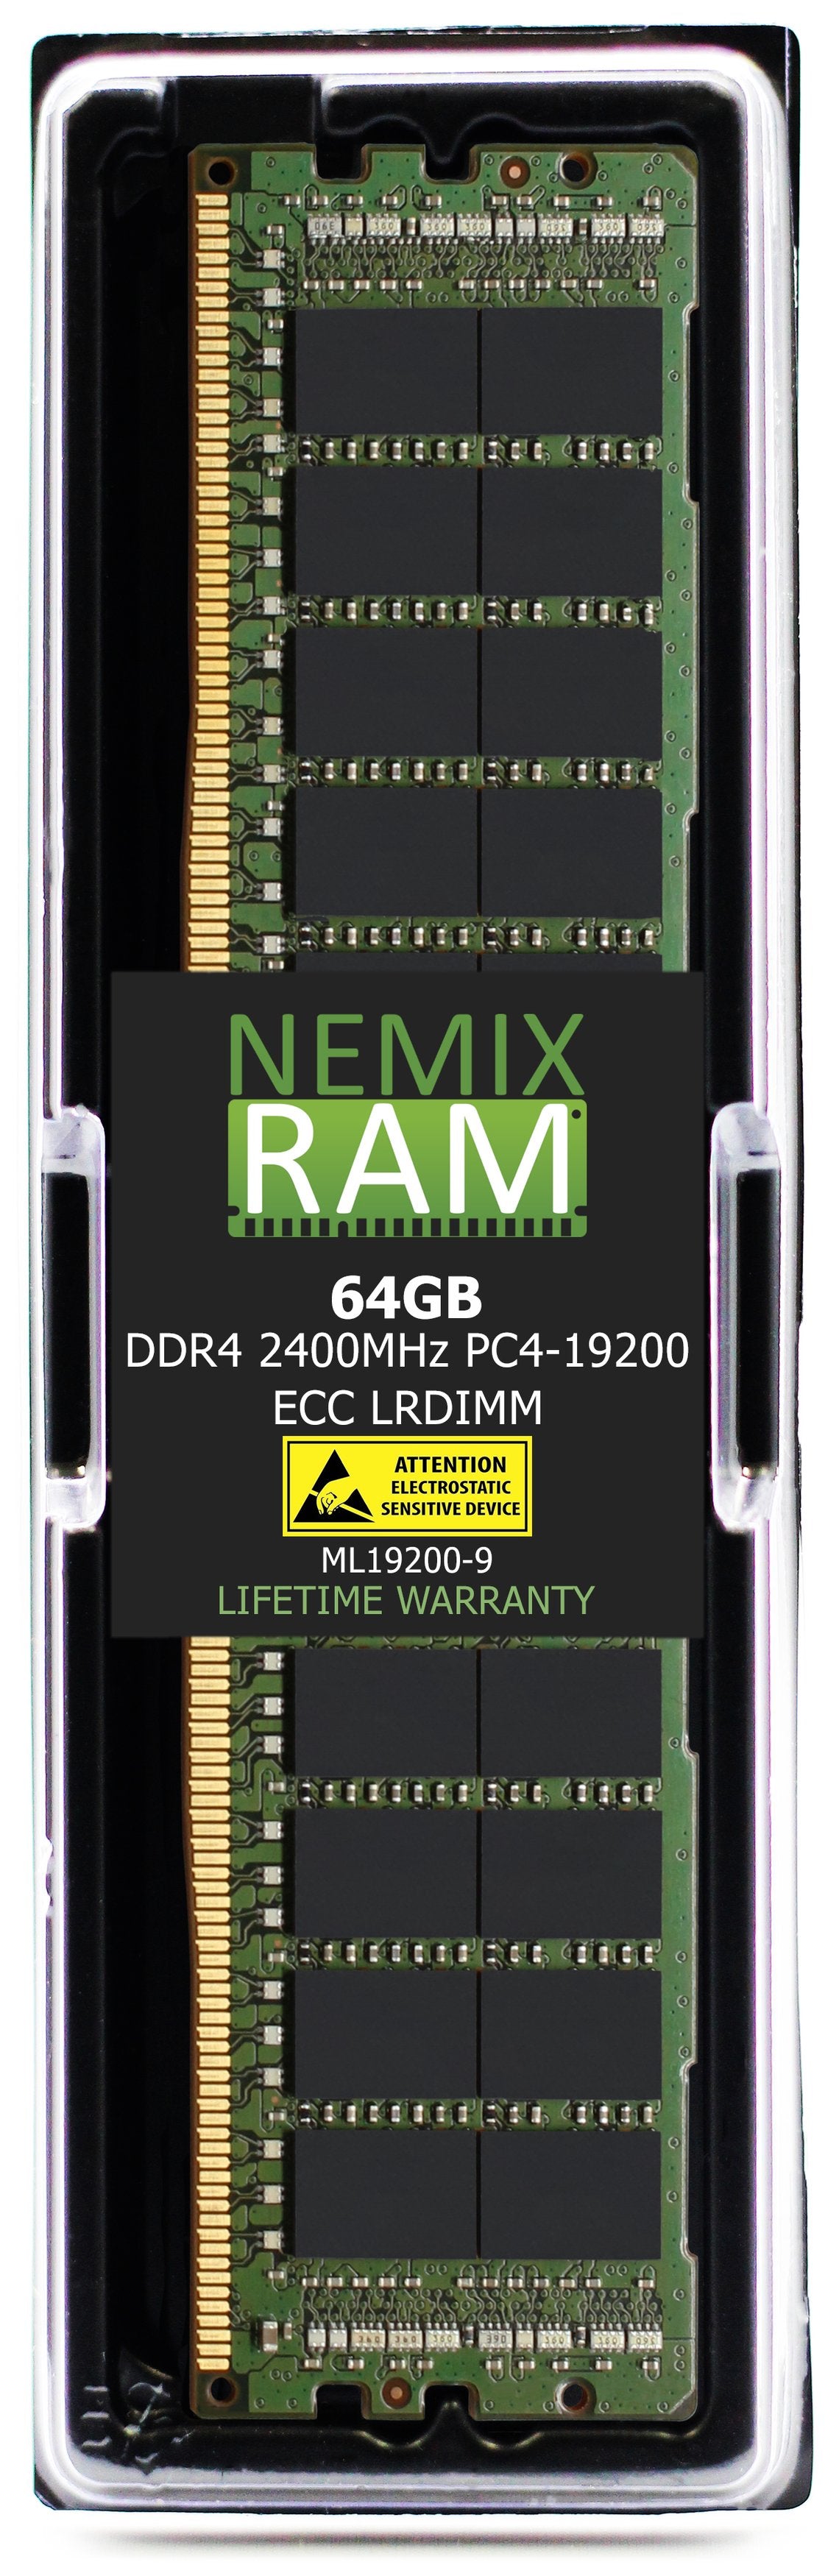 64GB DDR4 2400MHZ PC4-19200 LRDIMM Compatible with Supermicro MEM-DR464L-SL01-LR24